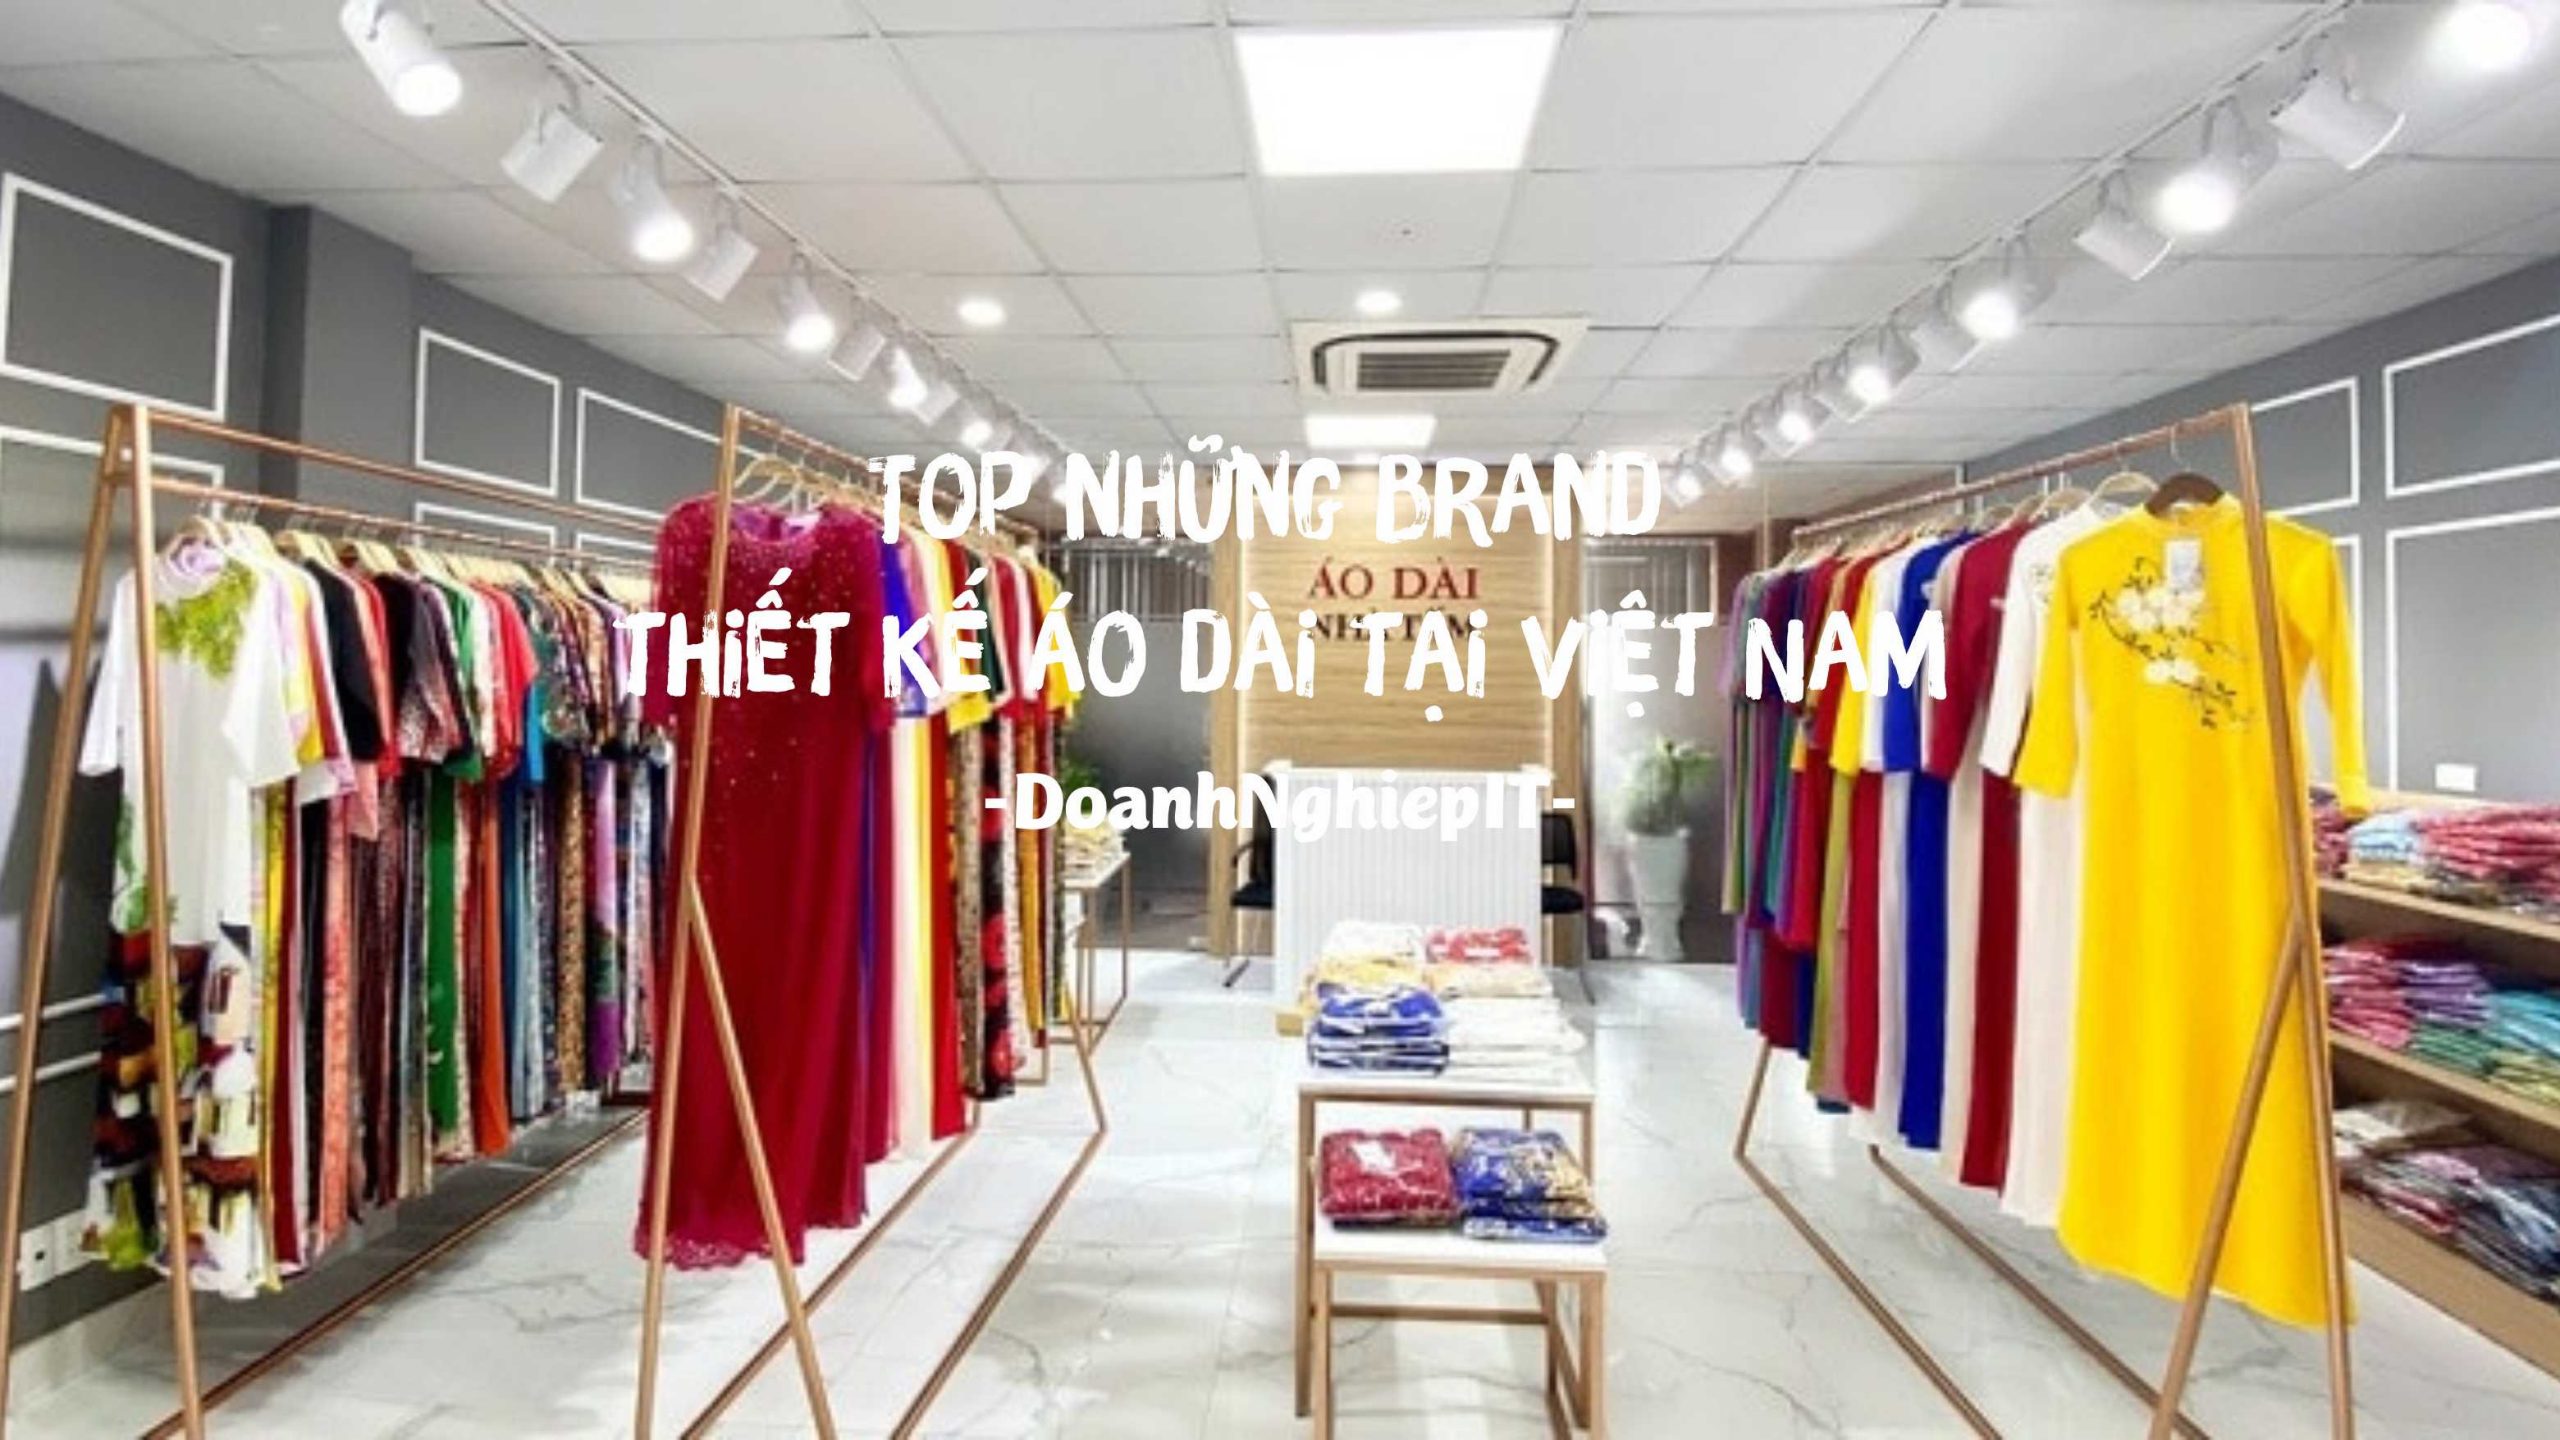 Top những brand thiết kế áo dài tại Việt Nam